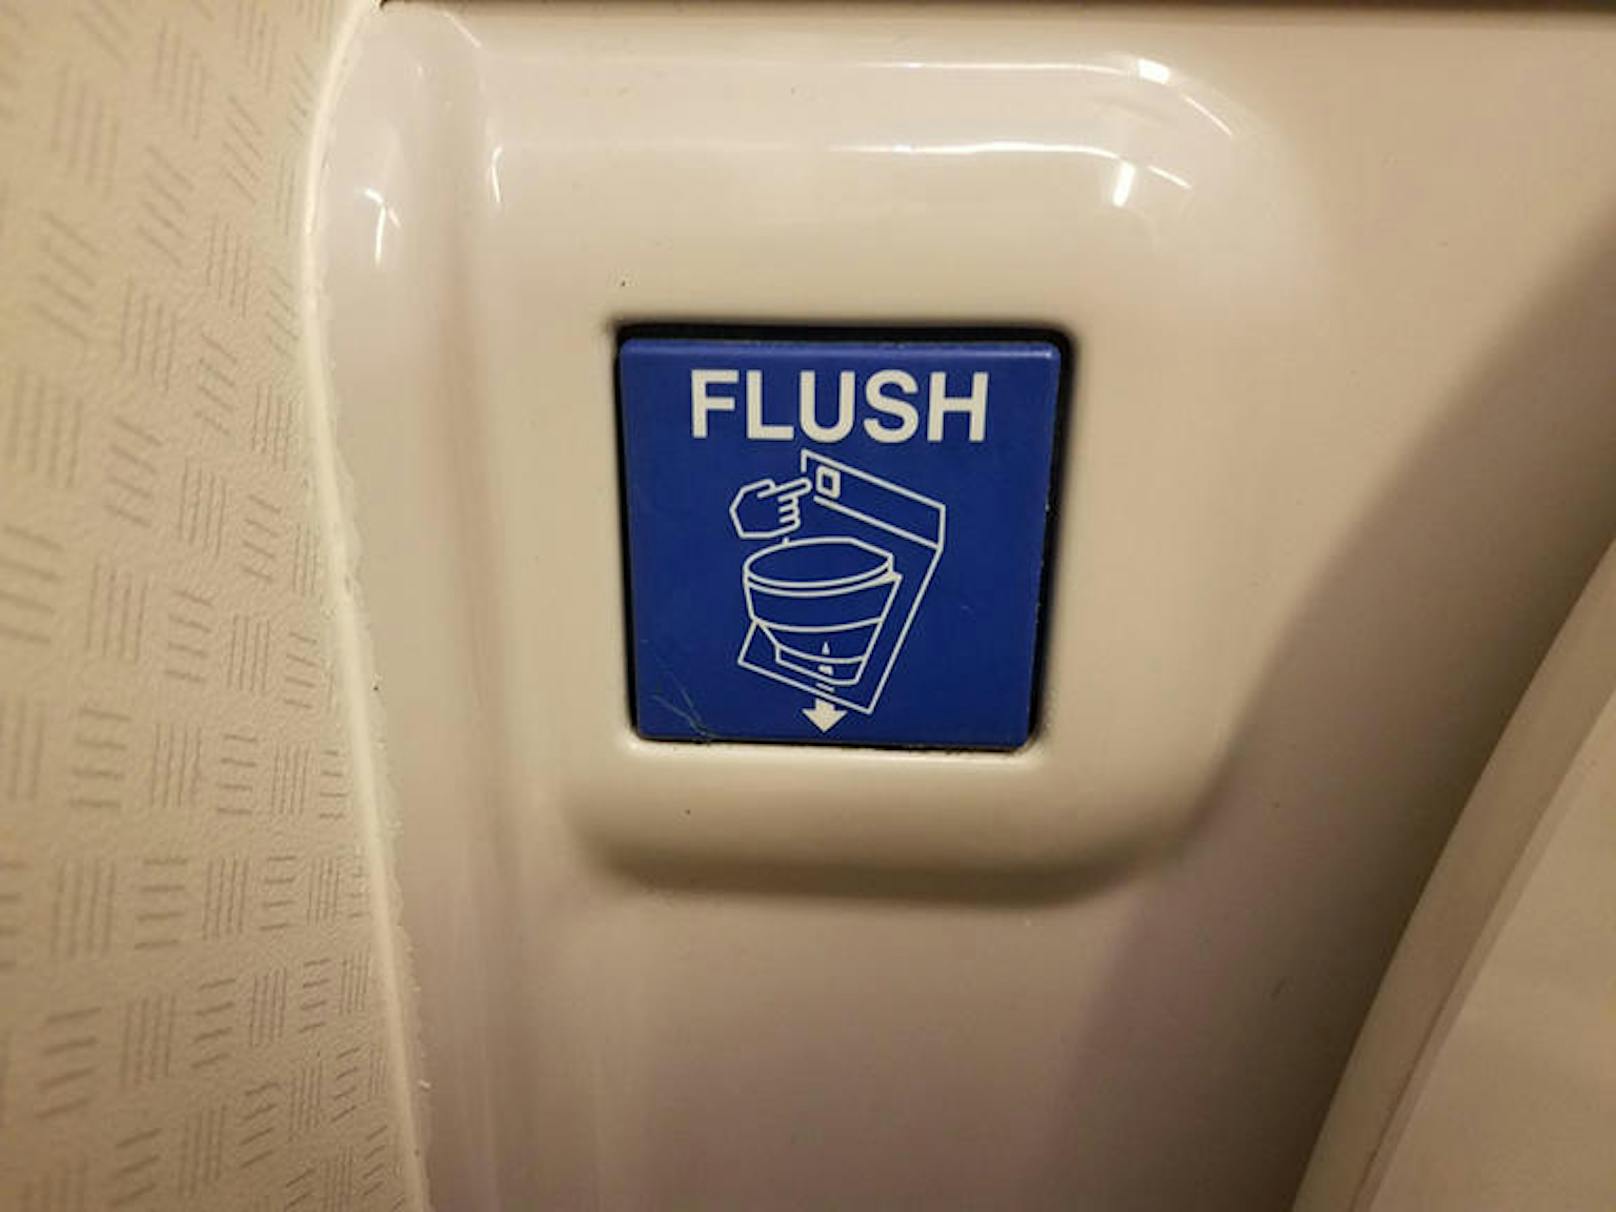 Tipp: Reisende sollten sich nach dem Toilettengang die Hände sorgfältig waschen (und ggf. desinfizieren) und den Türriegel mit einem frischen Papierhandtuch öffnen.